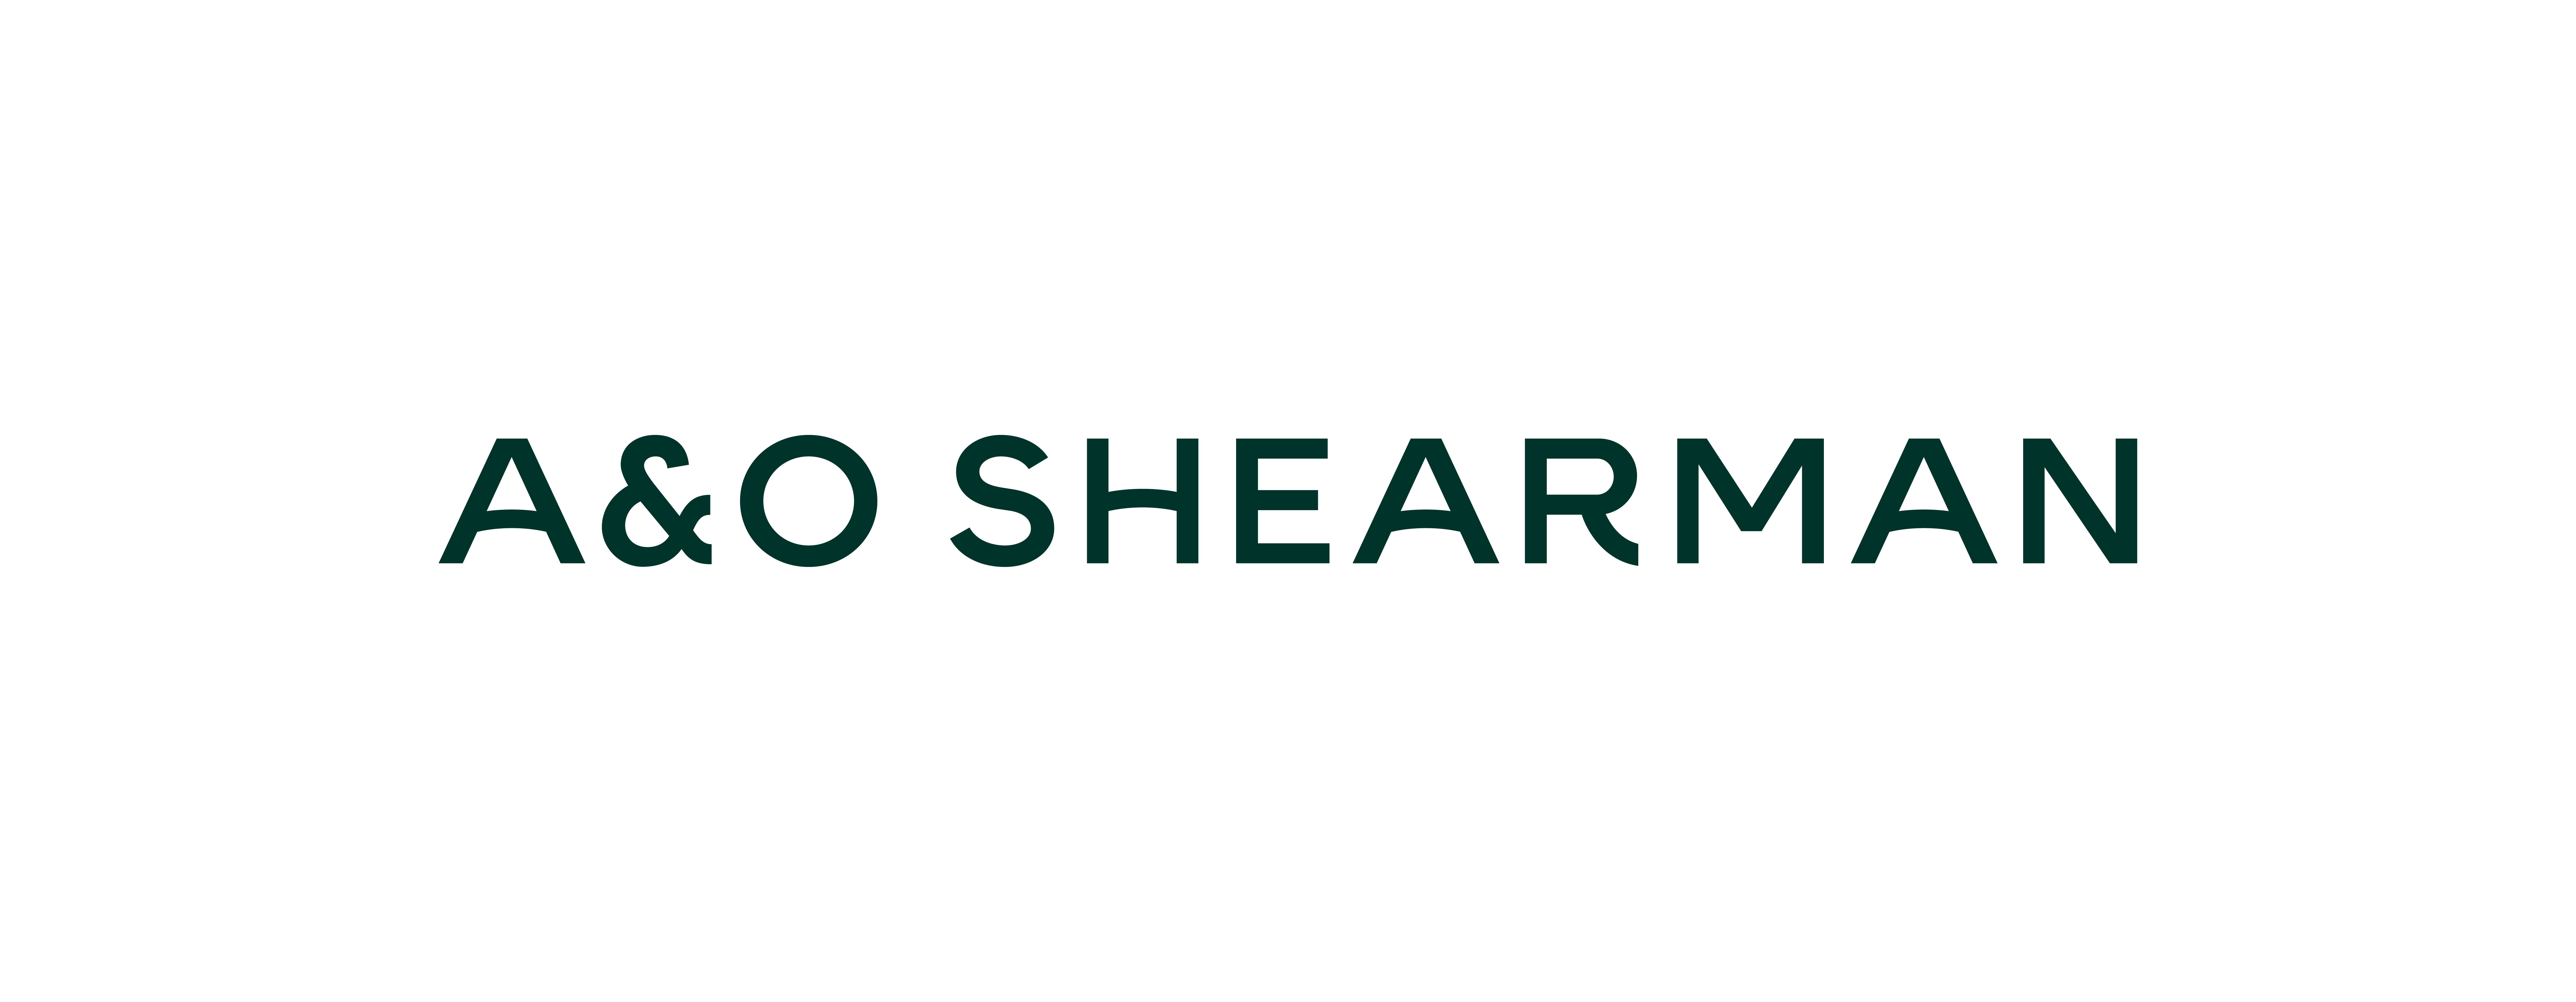 A&O SHEARMAN Luxembourg logo